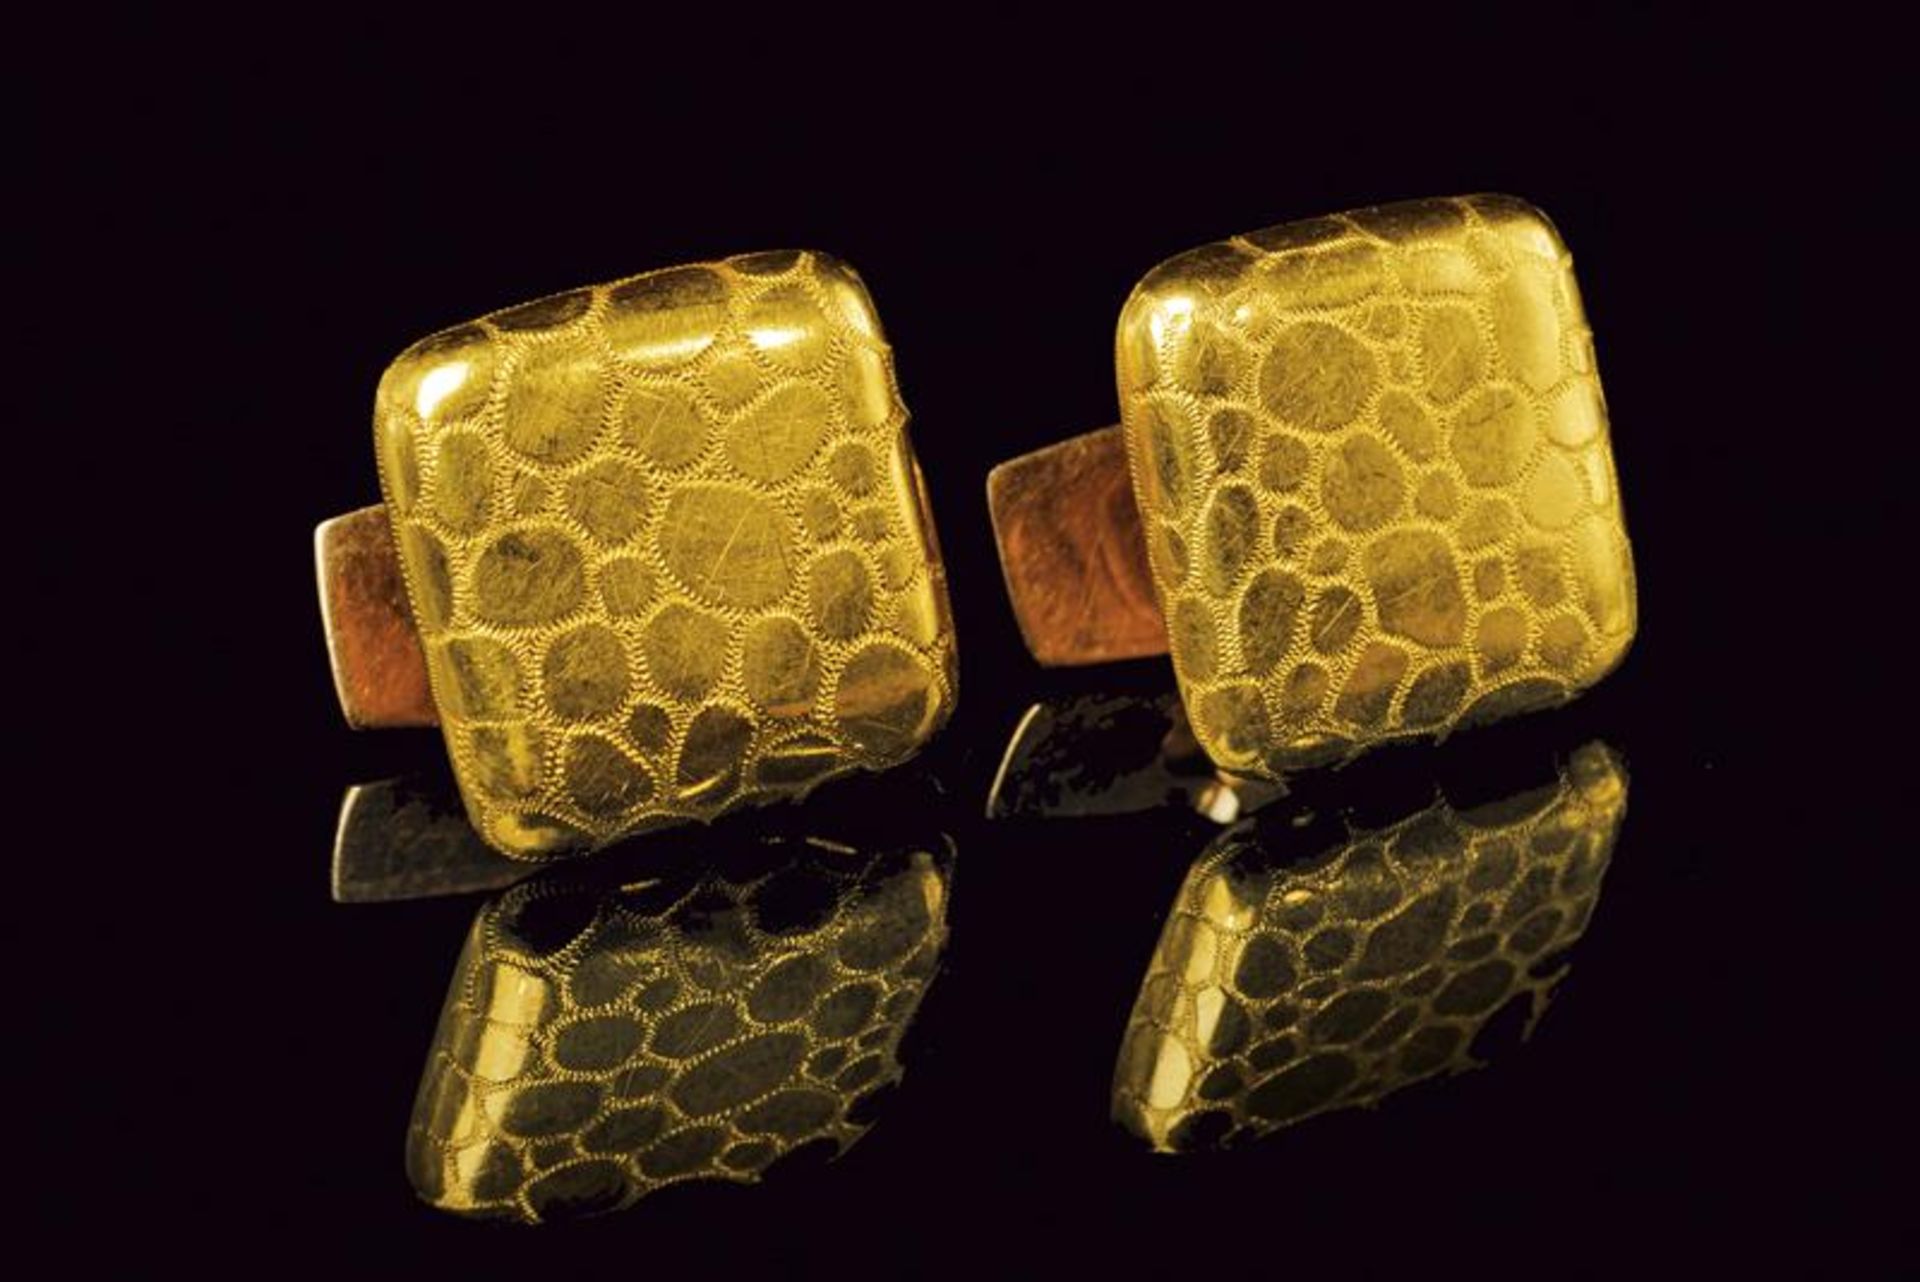 A pair of 18 kt gold cufflinks